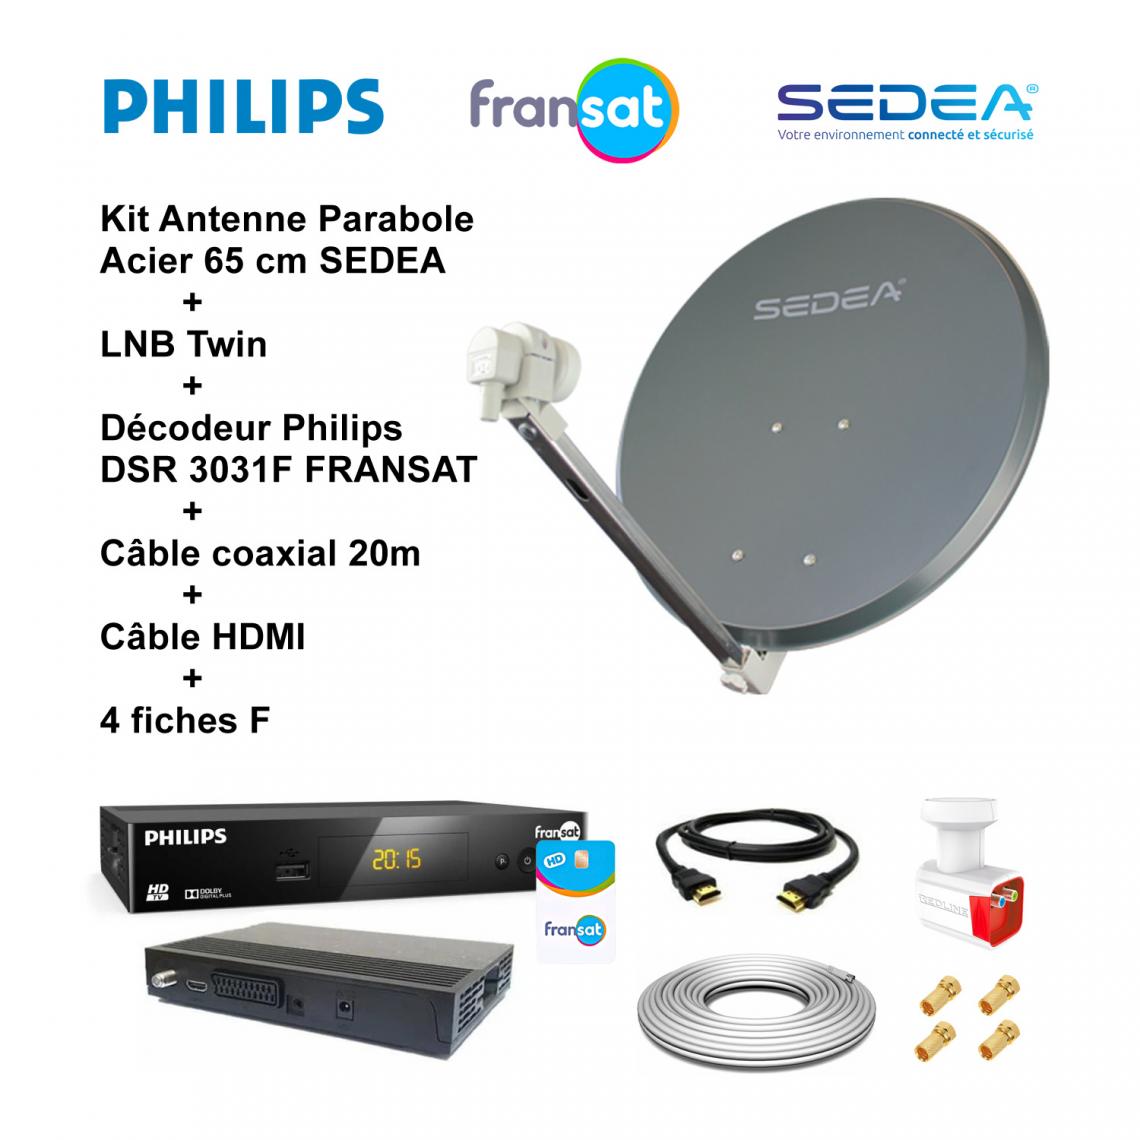 Sedea - Kit Antenne Parabole Acier 65 cm 36,5 dB Anthracite SEDEA + LNB Twin 0,1 dB Full HD 4K Ultra HD + Décodeur Philips DSR 3031F FRANSAT + Câble coaxial 20m + Câble HDMI + 4 fiches F - Antennes intérieures